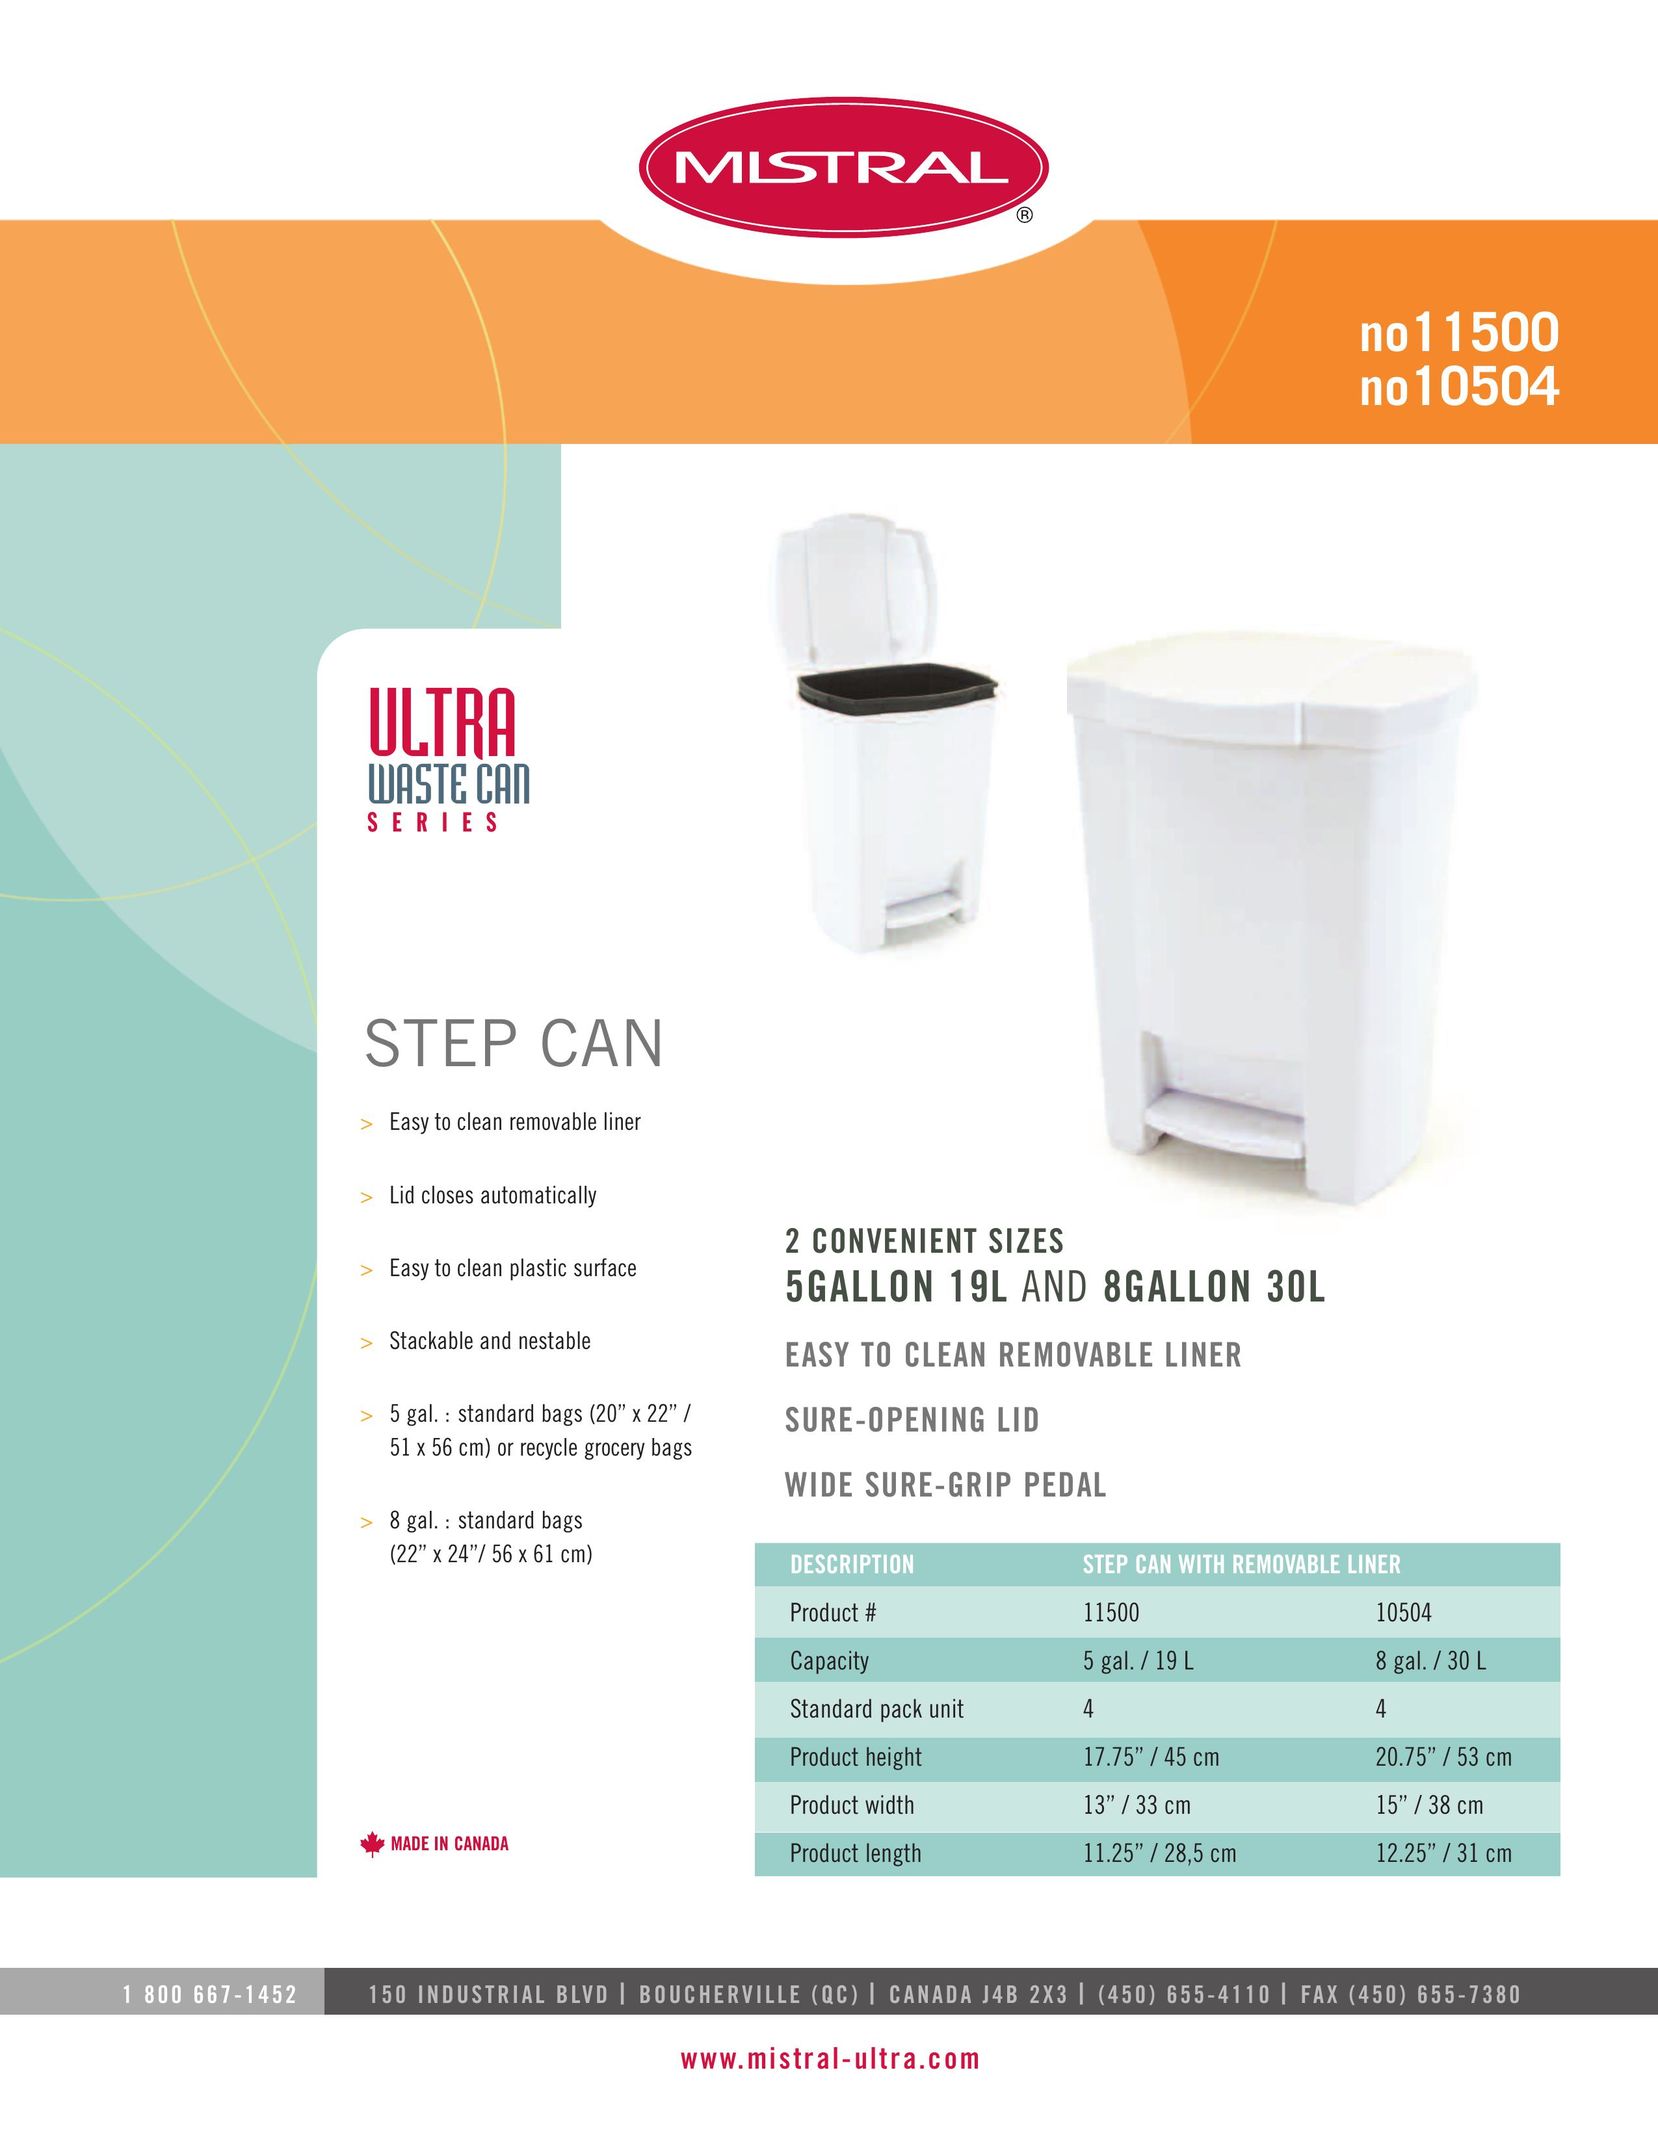 Mistral 10504 Garbage Disposal User Manual